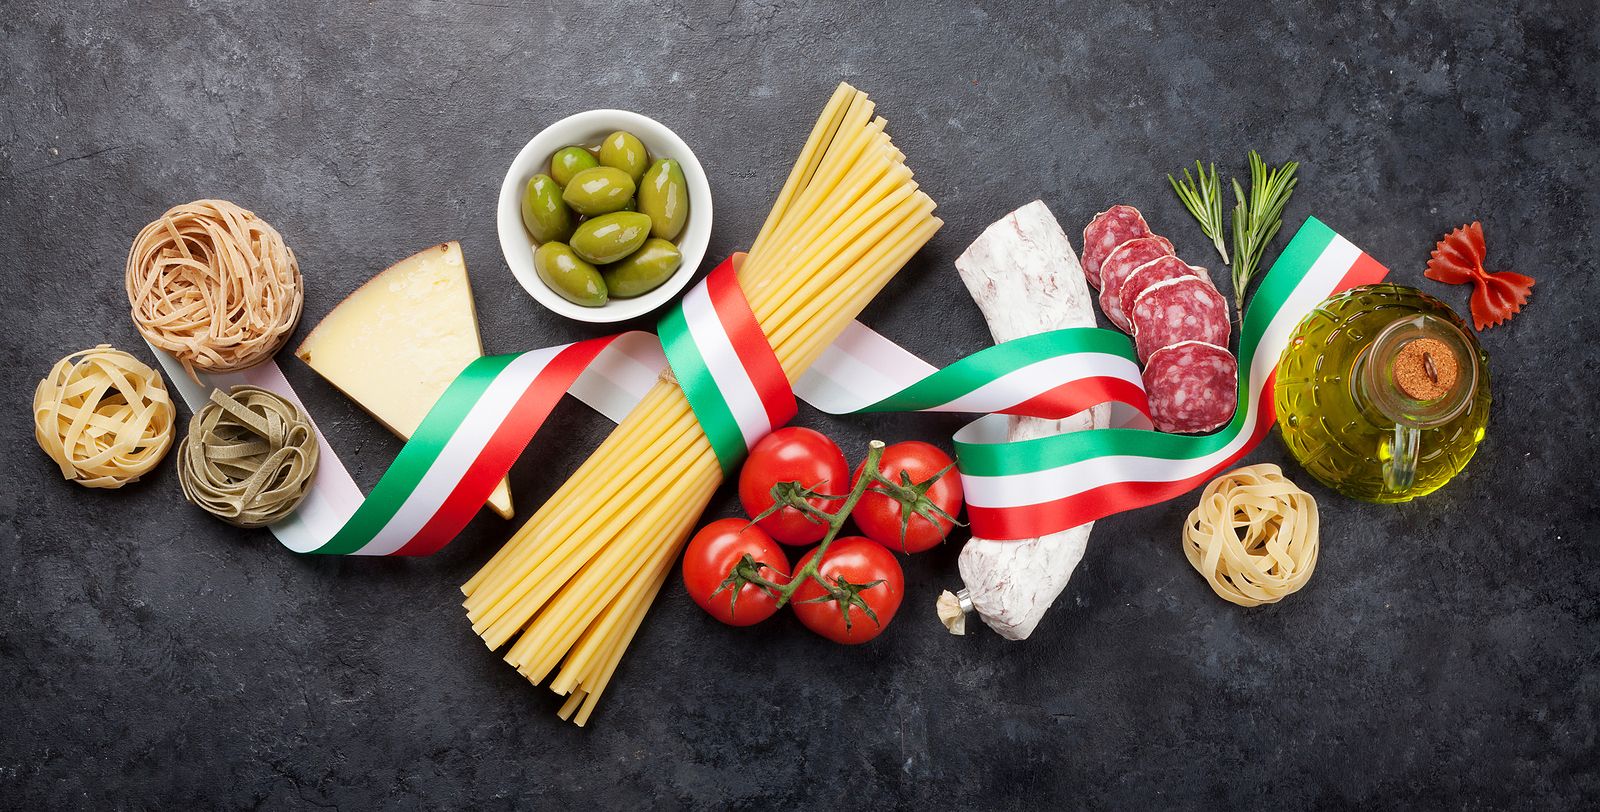 La gastronomía italiana inunda las estanterías de Lidl con productos con denominación de origen (Foto Bigstock)